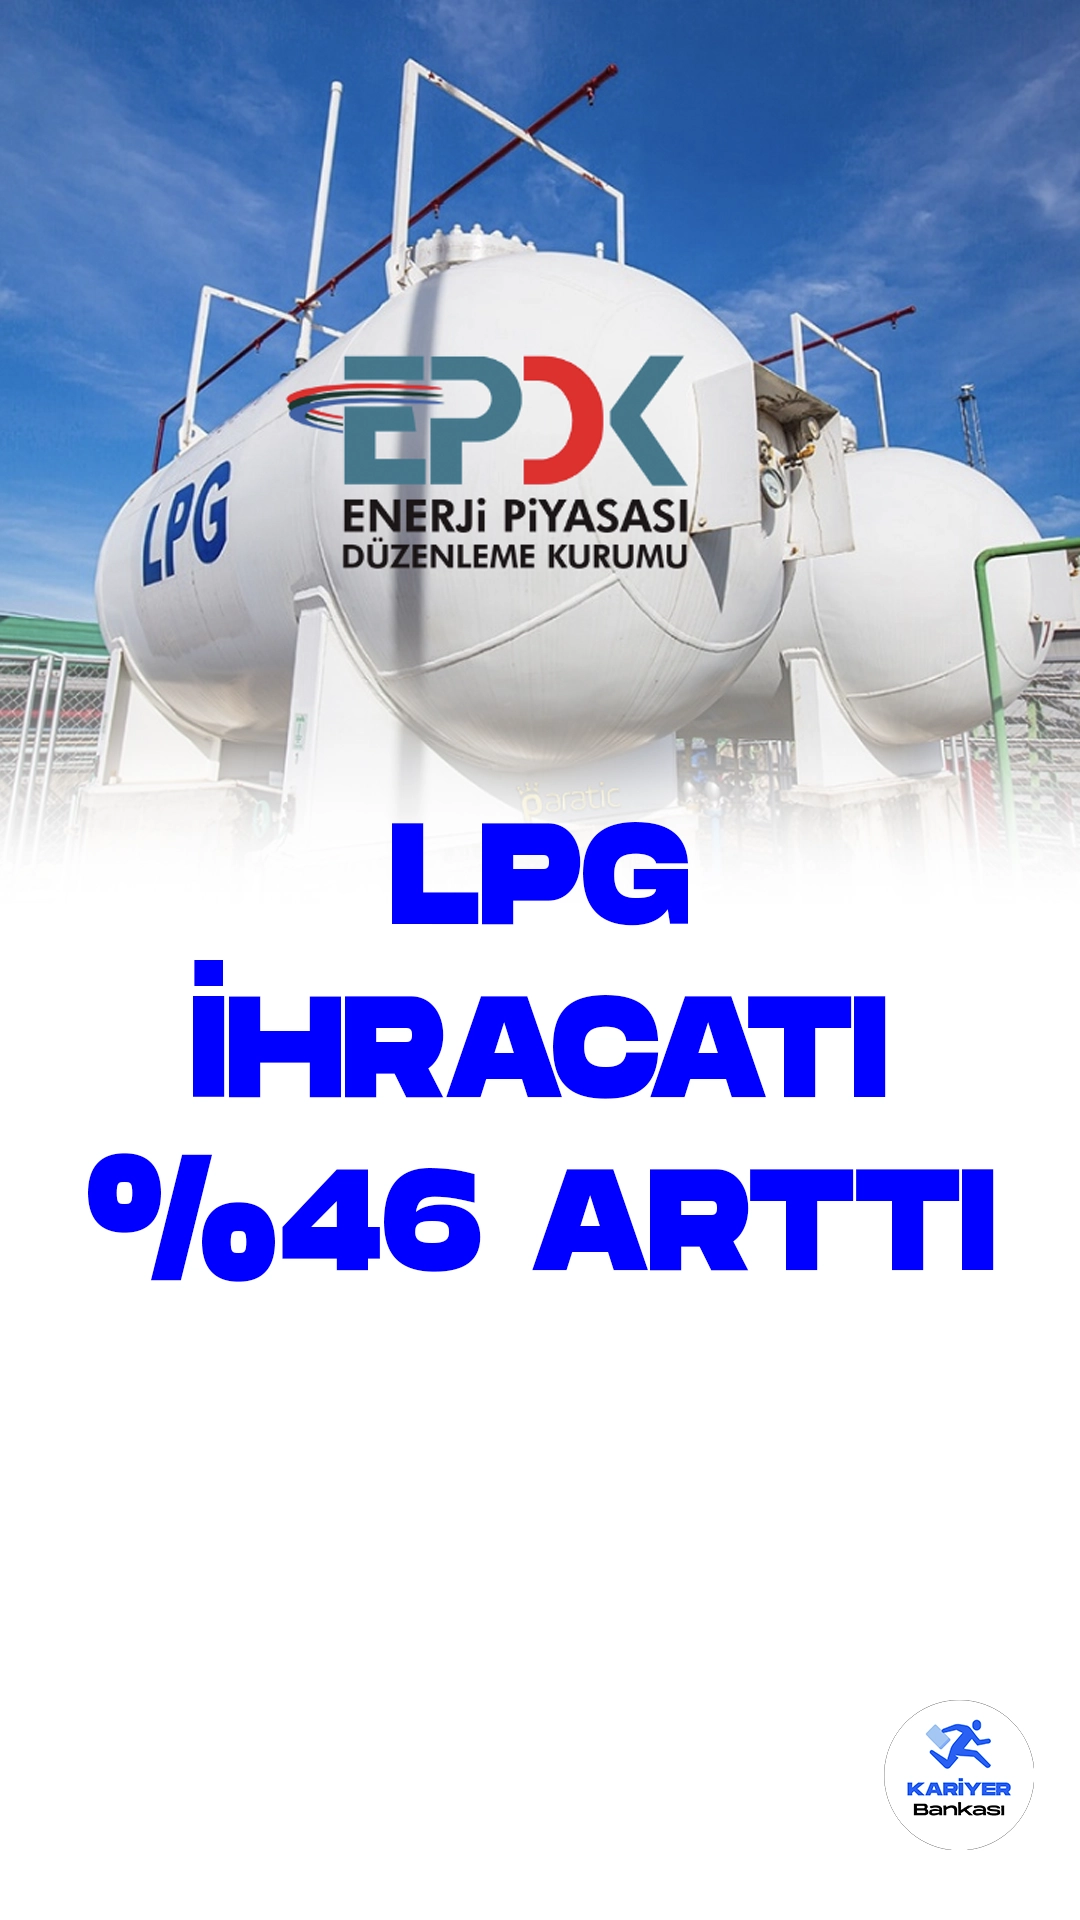 LPG İthalatı Geçen Yıla Göre Yüzde 46 Artışla 320 Bin 670 Tona Ulaştı.Enerji Piyasası Düzenleme Kurumu'nun yayınladığı "Sıvılaştırılmış Petrol Gazları (LPG) Piyasası Sektör Raporu"na göre, Türkiye'nin LPG ithalatı önemli bir artışla devam ediyor. Mayıs ayında yapılan değerlendirmelere göre, geçtiğimiz yılın aynı dönemine göre LPG ithalatı yüzde 46,13 oranında artarak 320 bin 670 tona ulaştı.